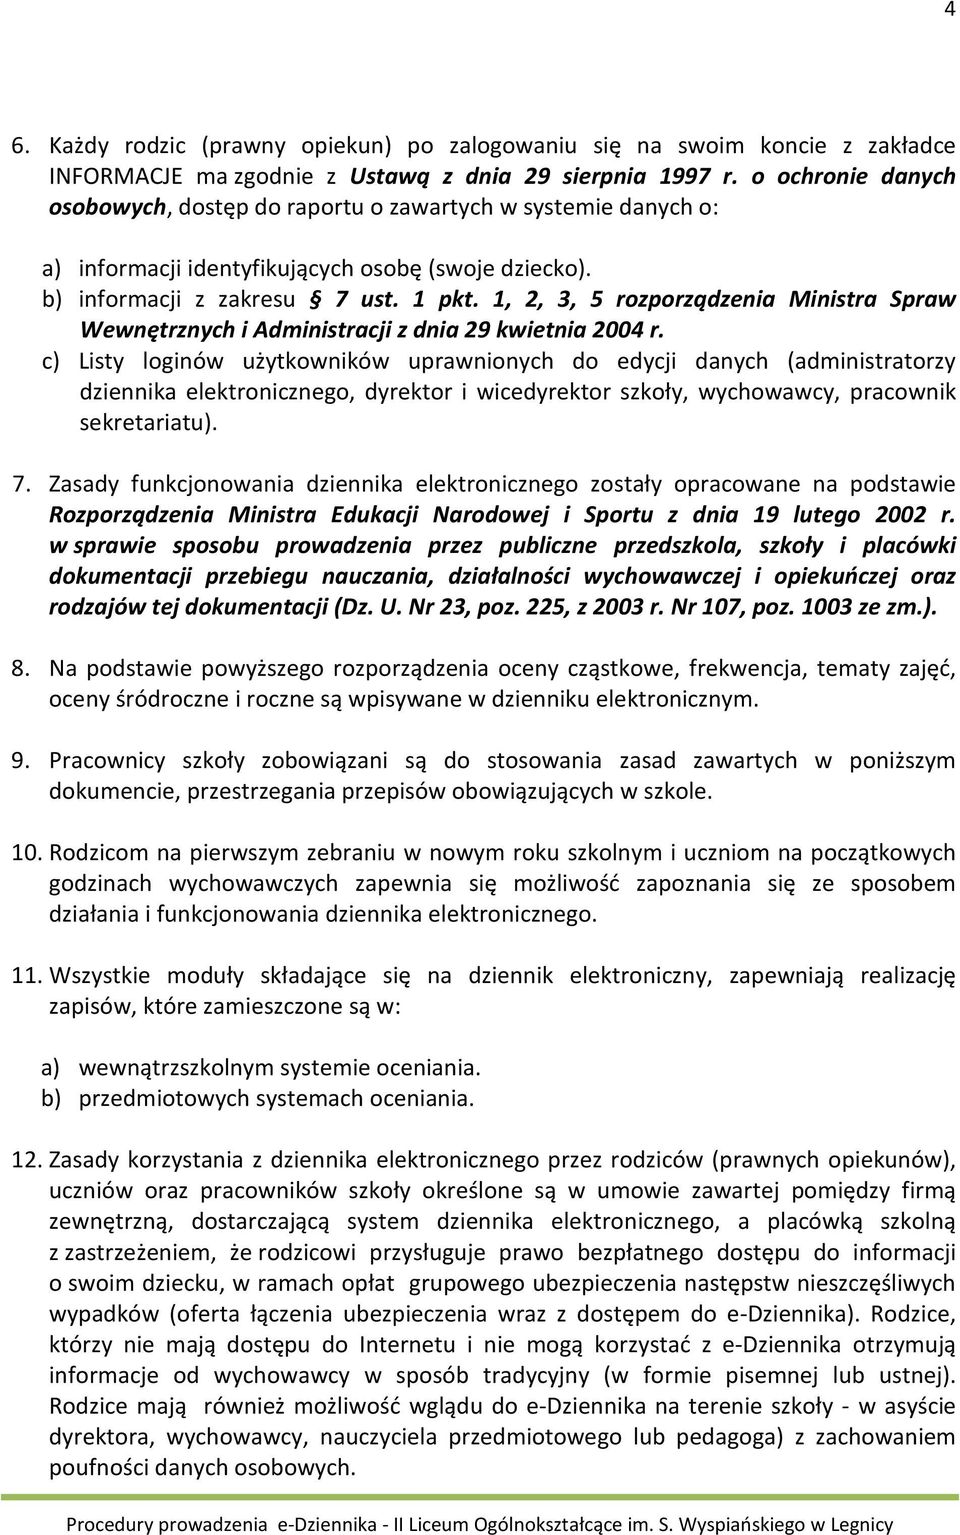 1, 2, 3, 5 rozporządzenia Ministra Spraw Wewnętrznych i Administracji z dnia 29 kwietnia 2004 r.